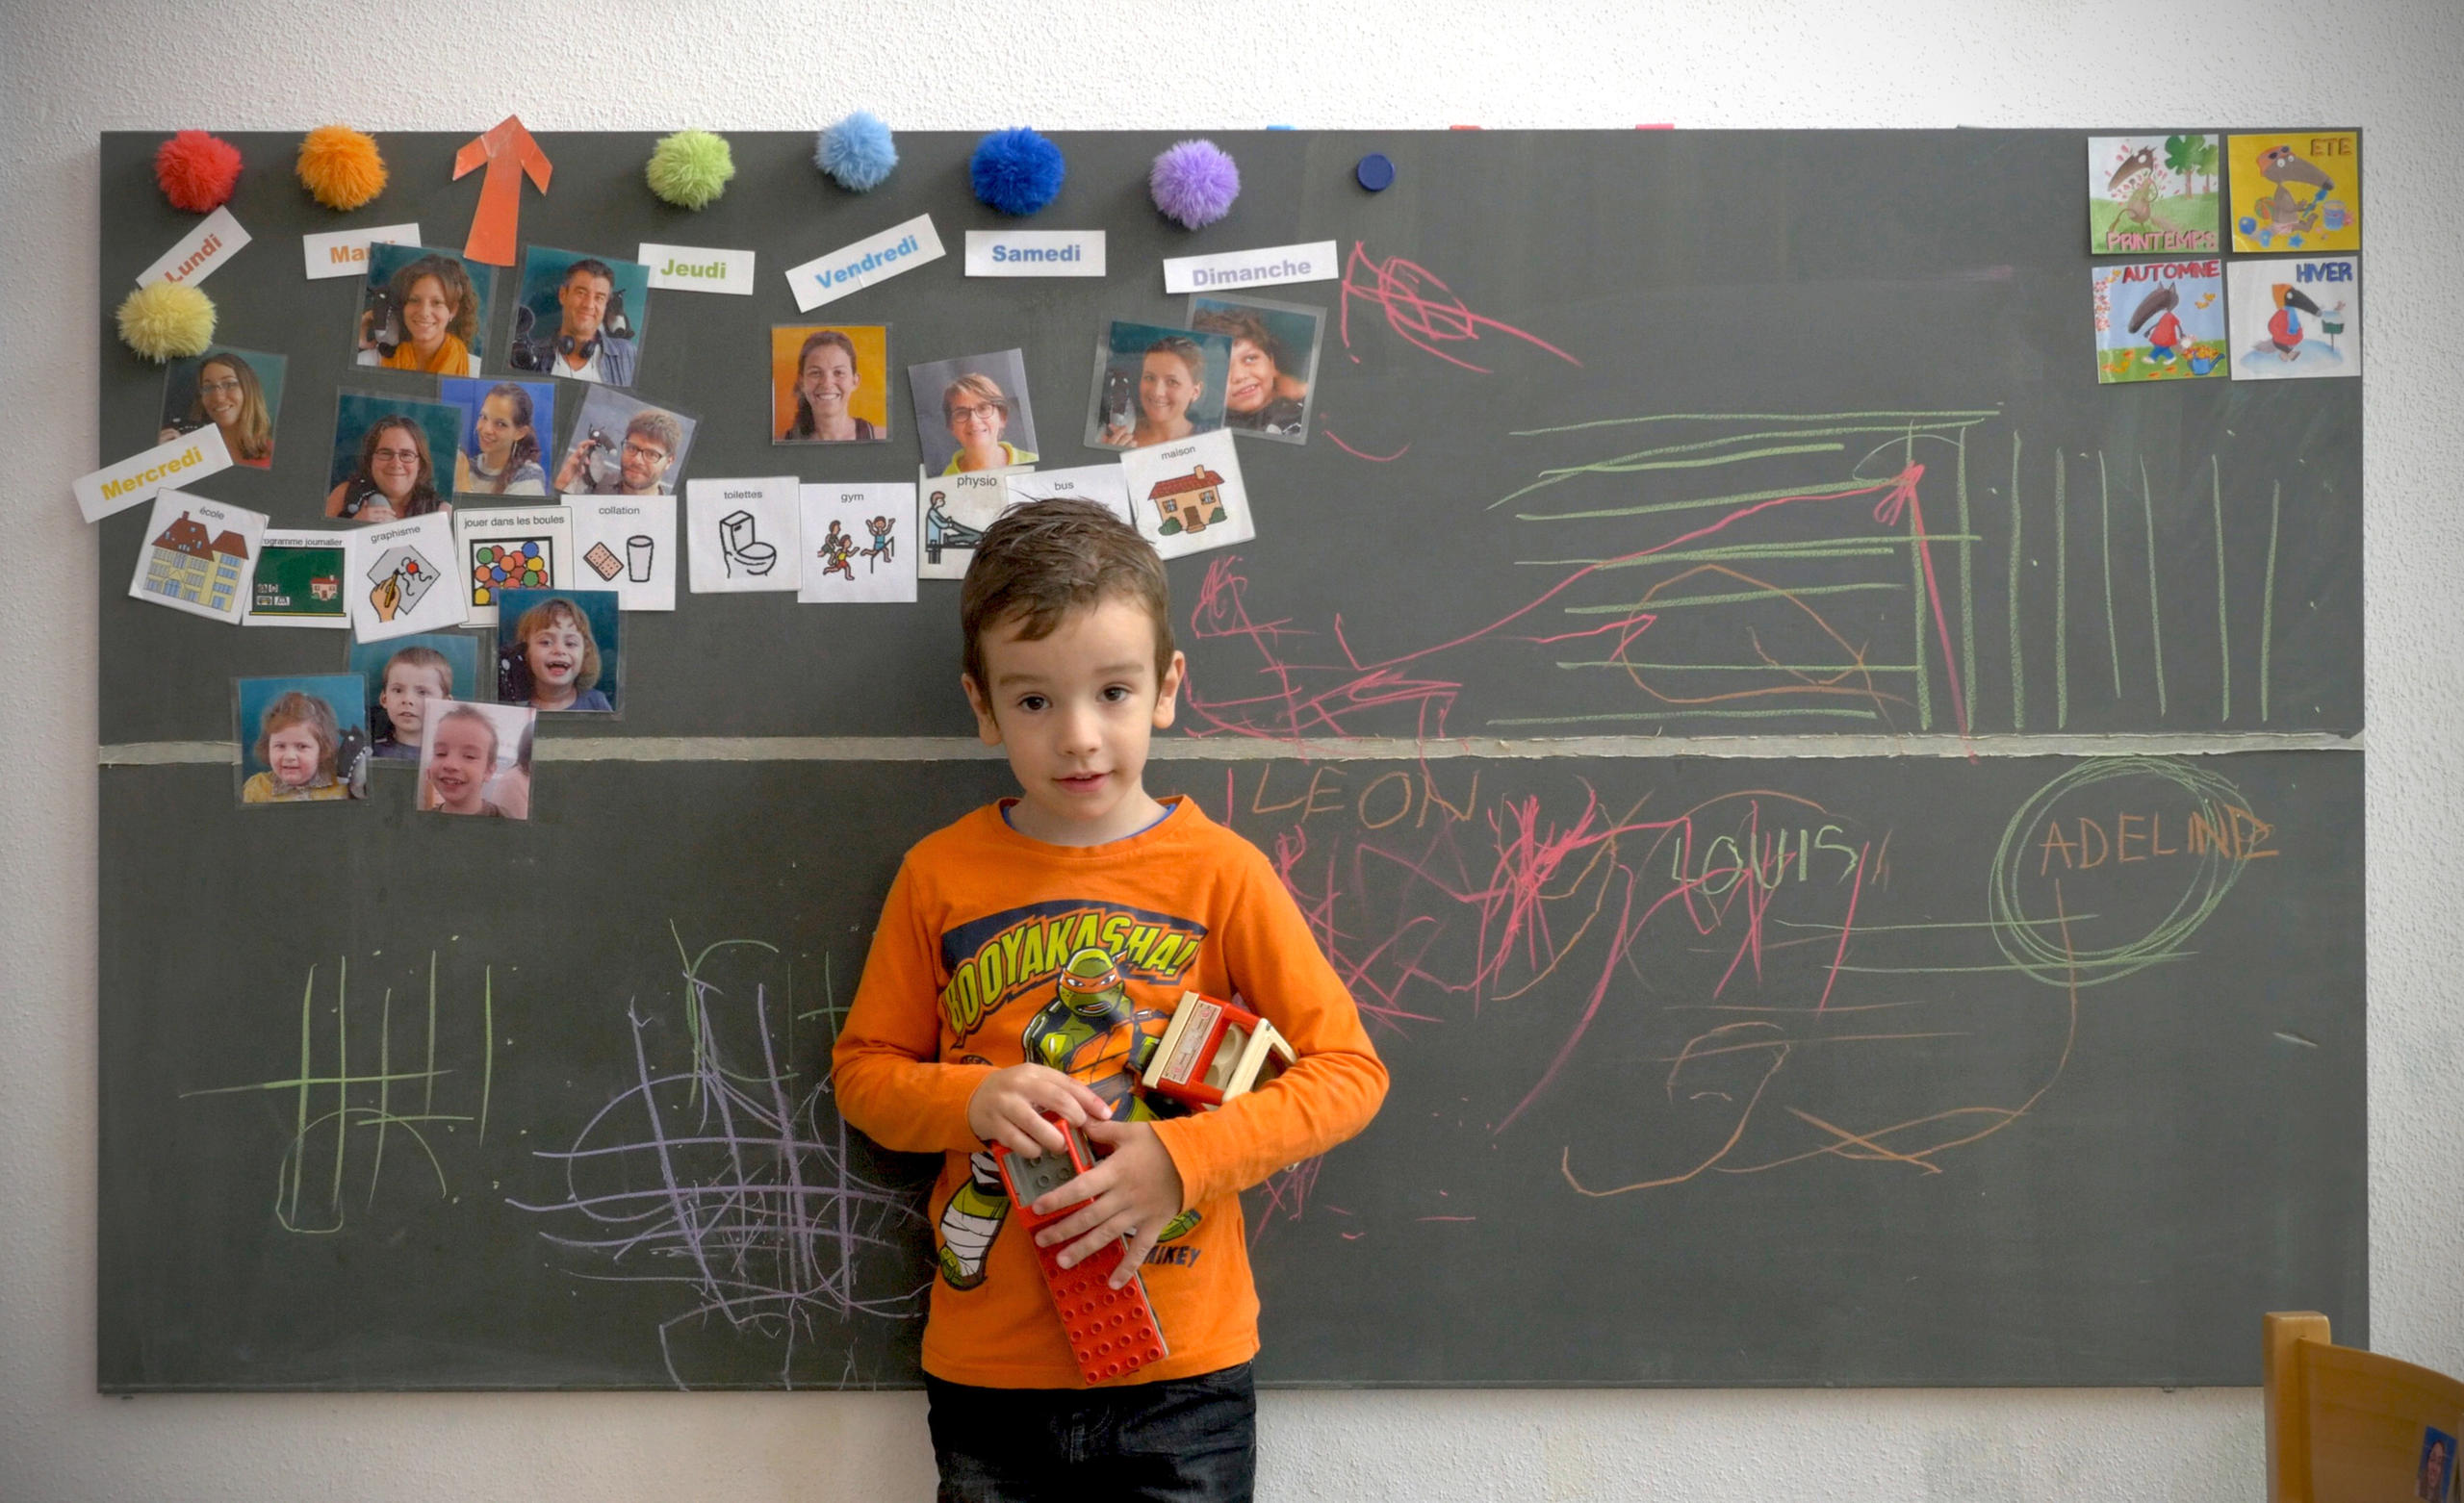 Bambino davanti a una lavagna, sulla quale sono appesi dei ritratti fotografici e disegnati alcuni scarabocchi a colori